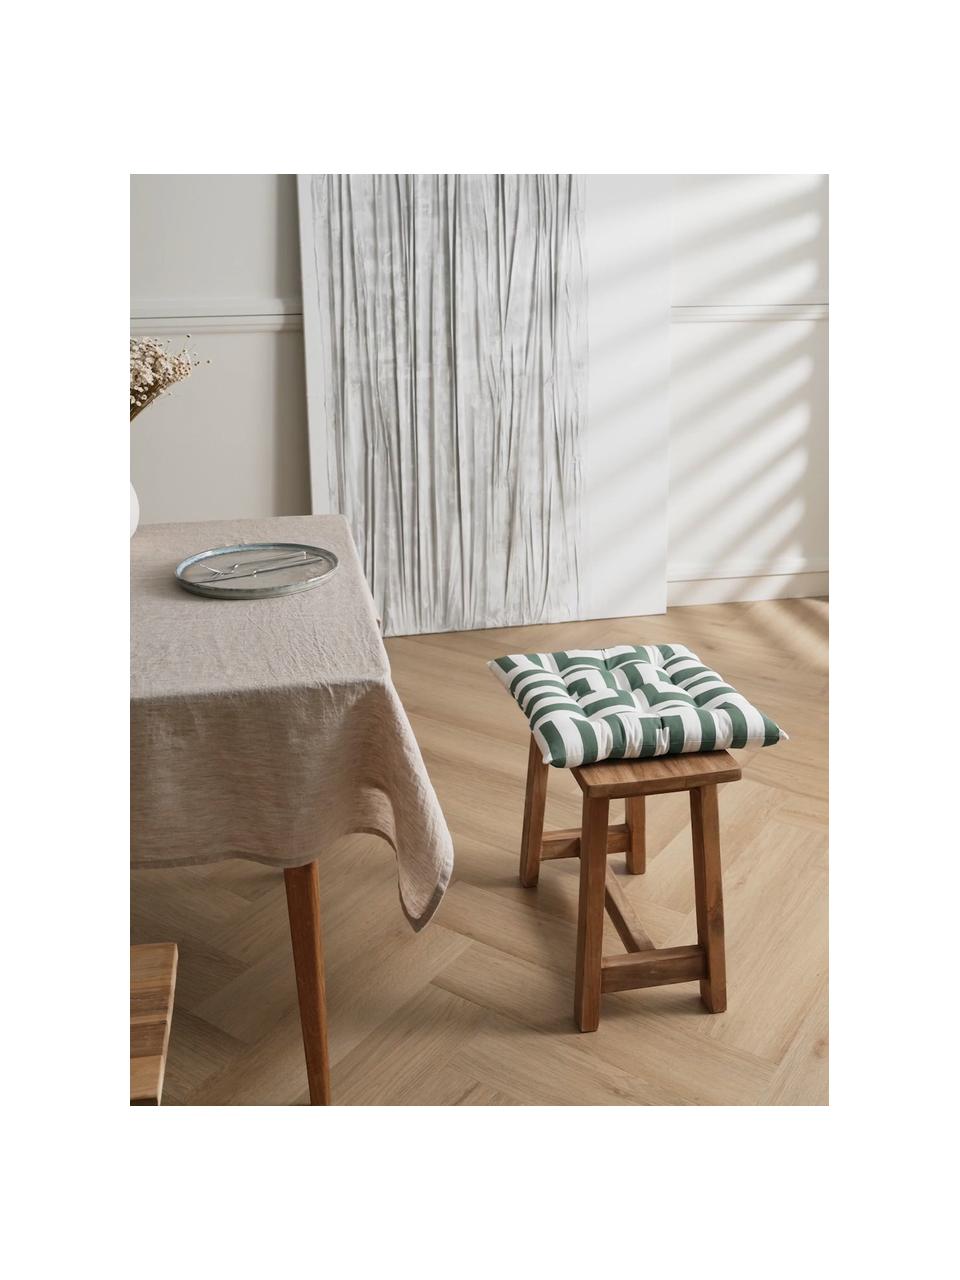 Katoenen stoelkussen Bram met grafisch patroon, Bekleding: 100% katoen, Donkergroen, wit, B 40 x L 40 cm